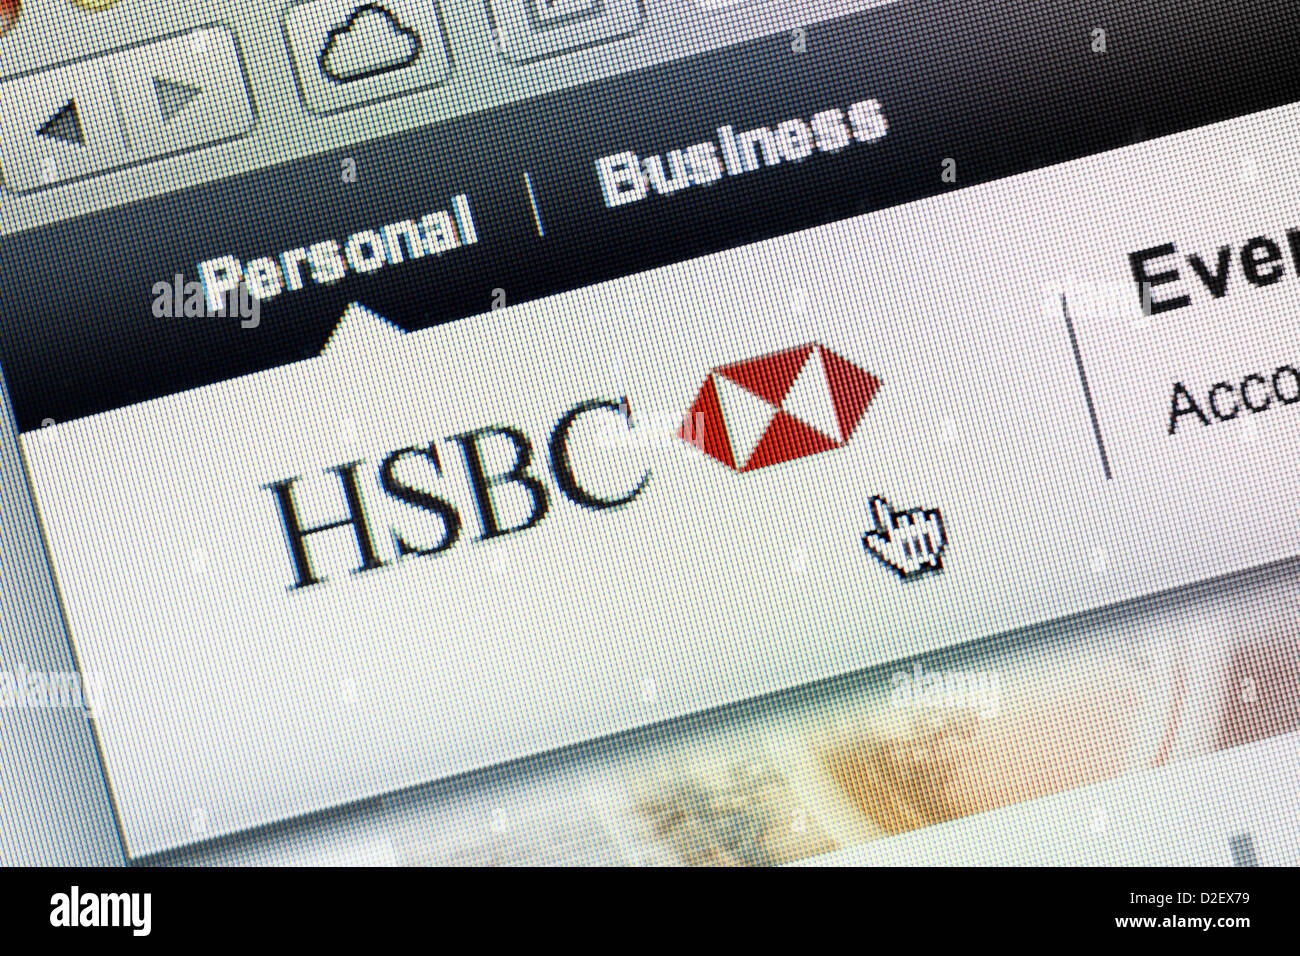 HSBC Bank logo and website close up Stock Photo